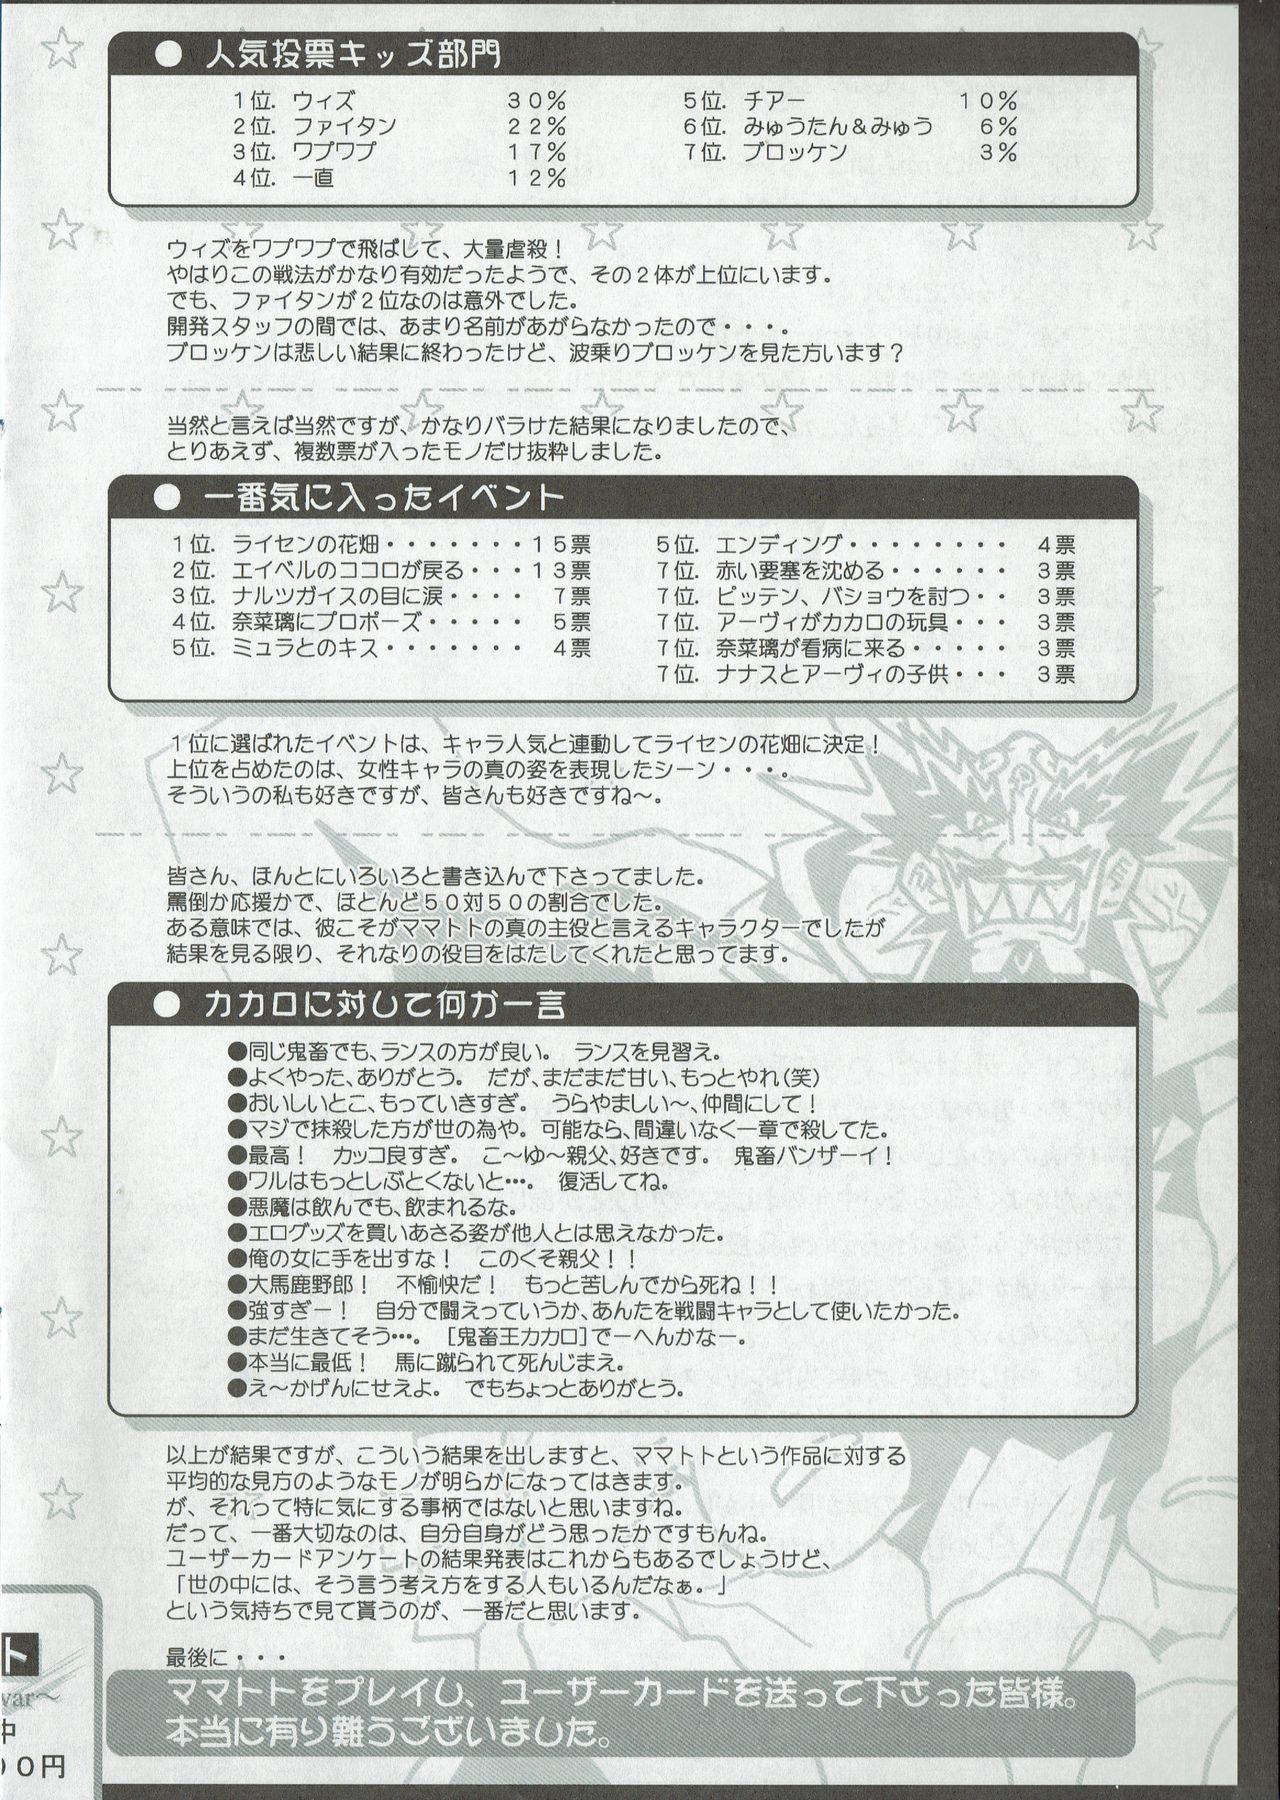 Arisu no Denchi Bakudan Vol. 08 8